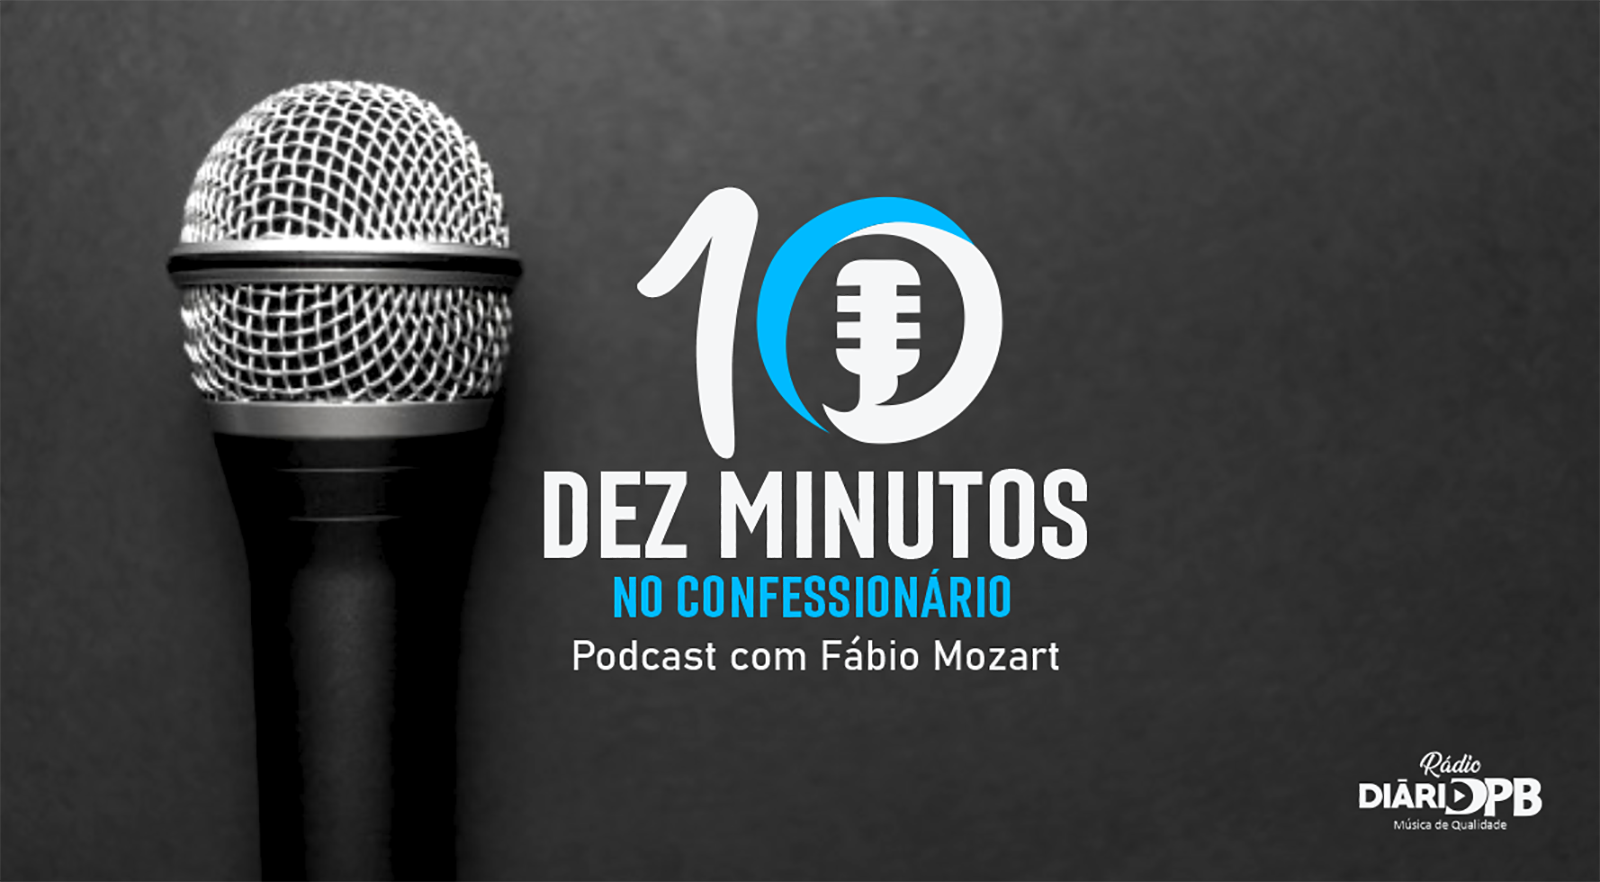 Podcast com Fabio Mozart